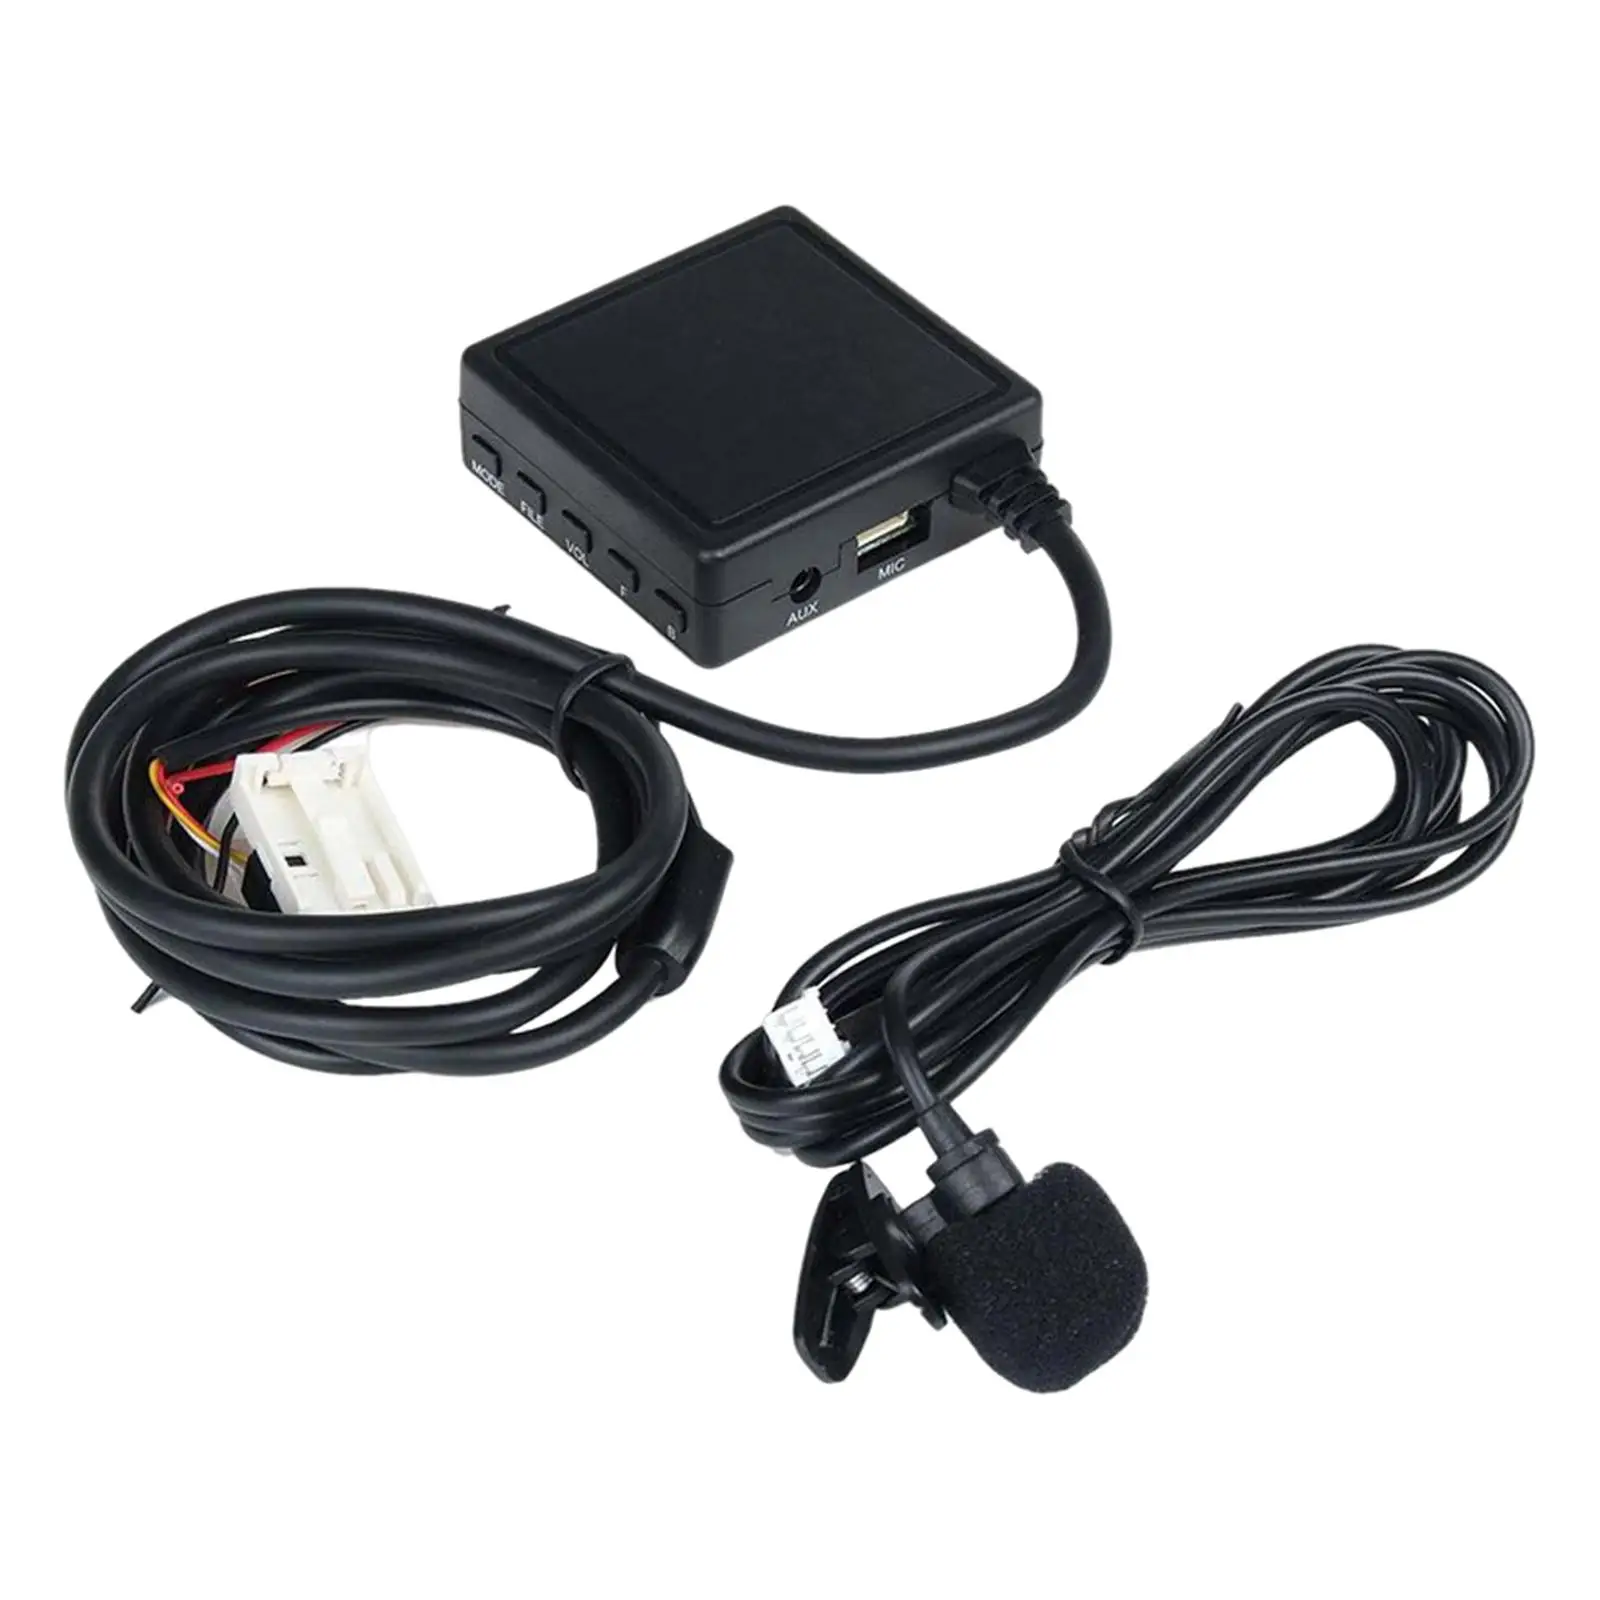 Car AUX Cable Adapter Support Handsfree Call Accessories for E65 E90 E60 E82